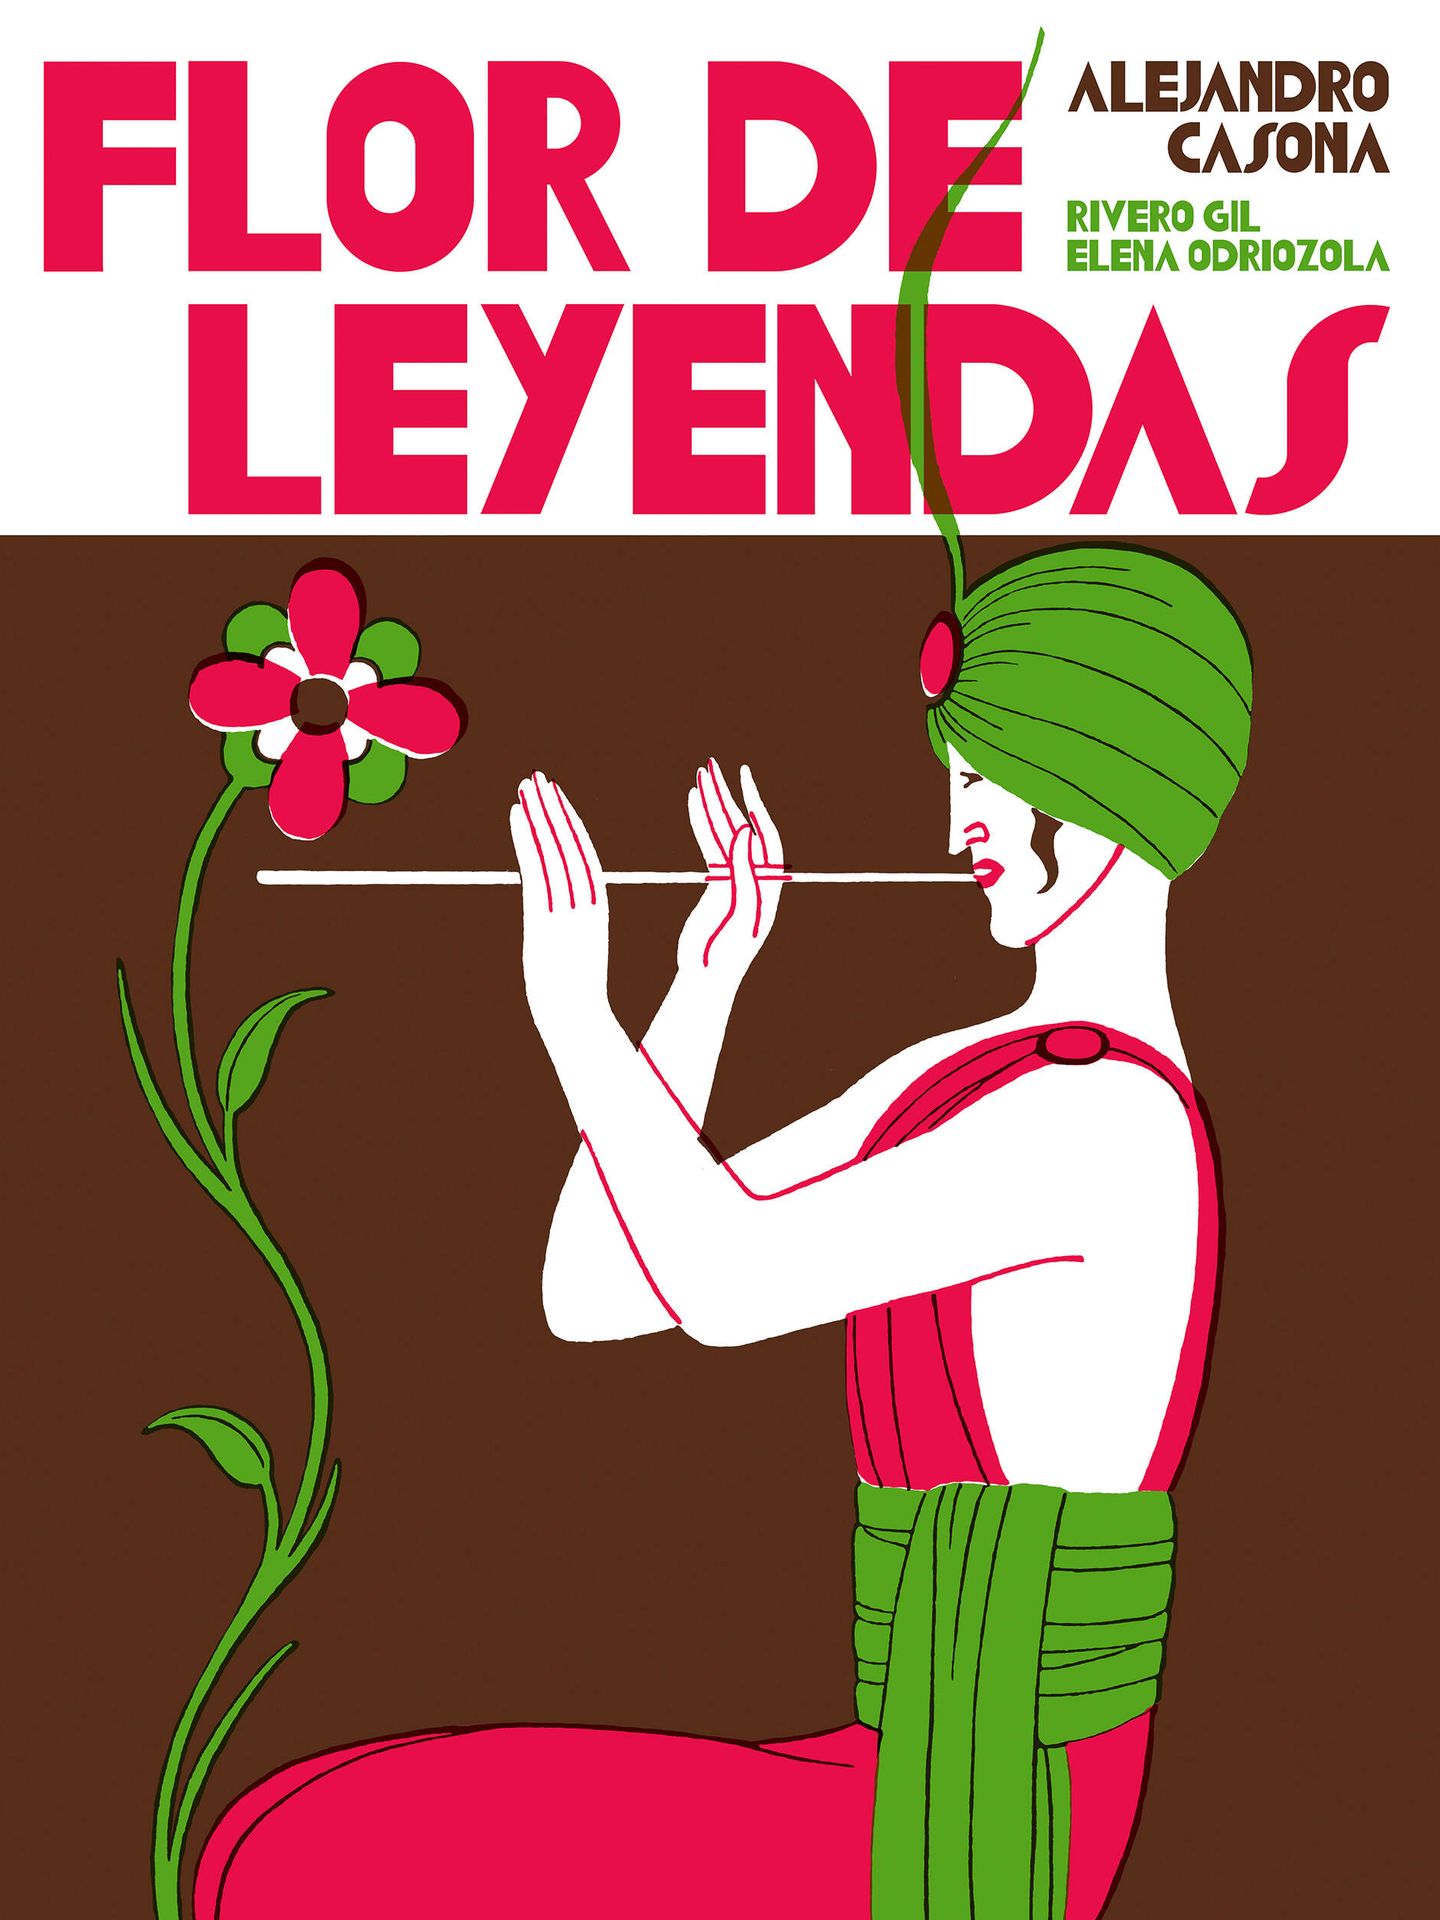 'Flor de leyendas' (Ediciones Modernas El Embudo)